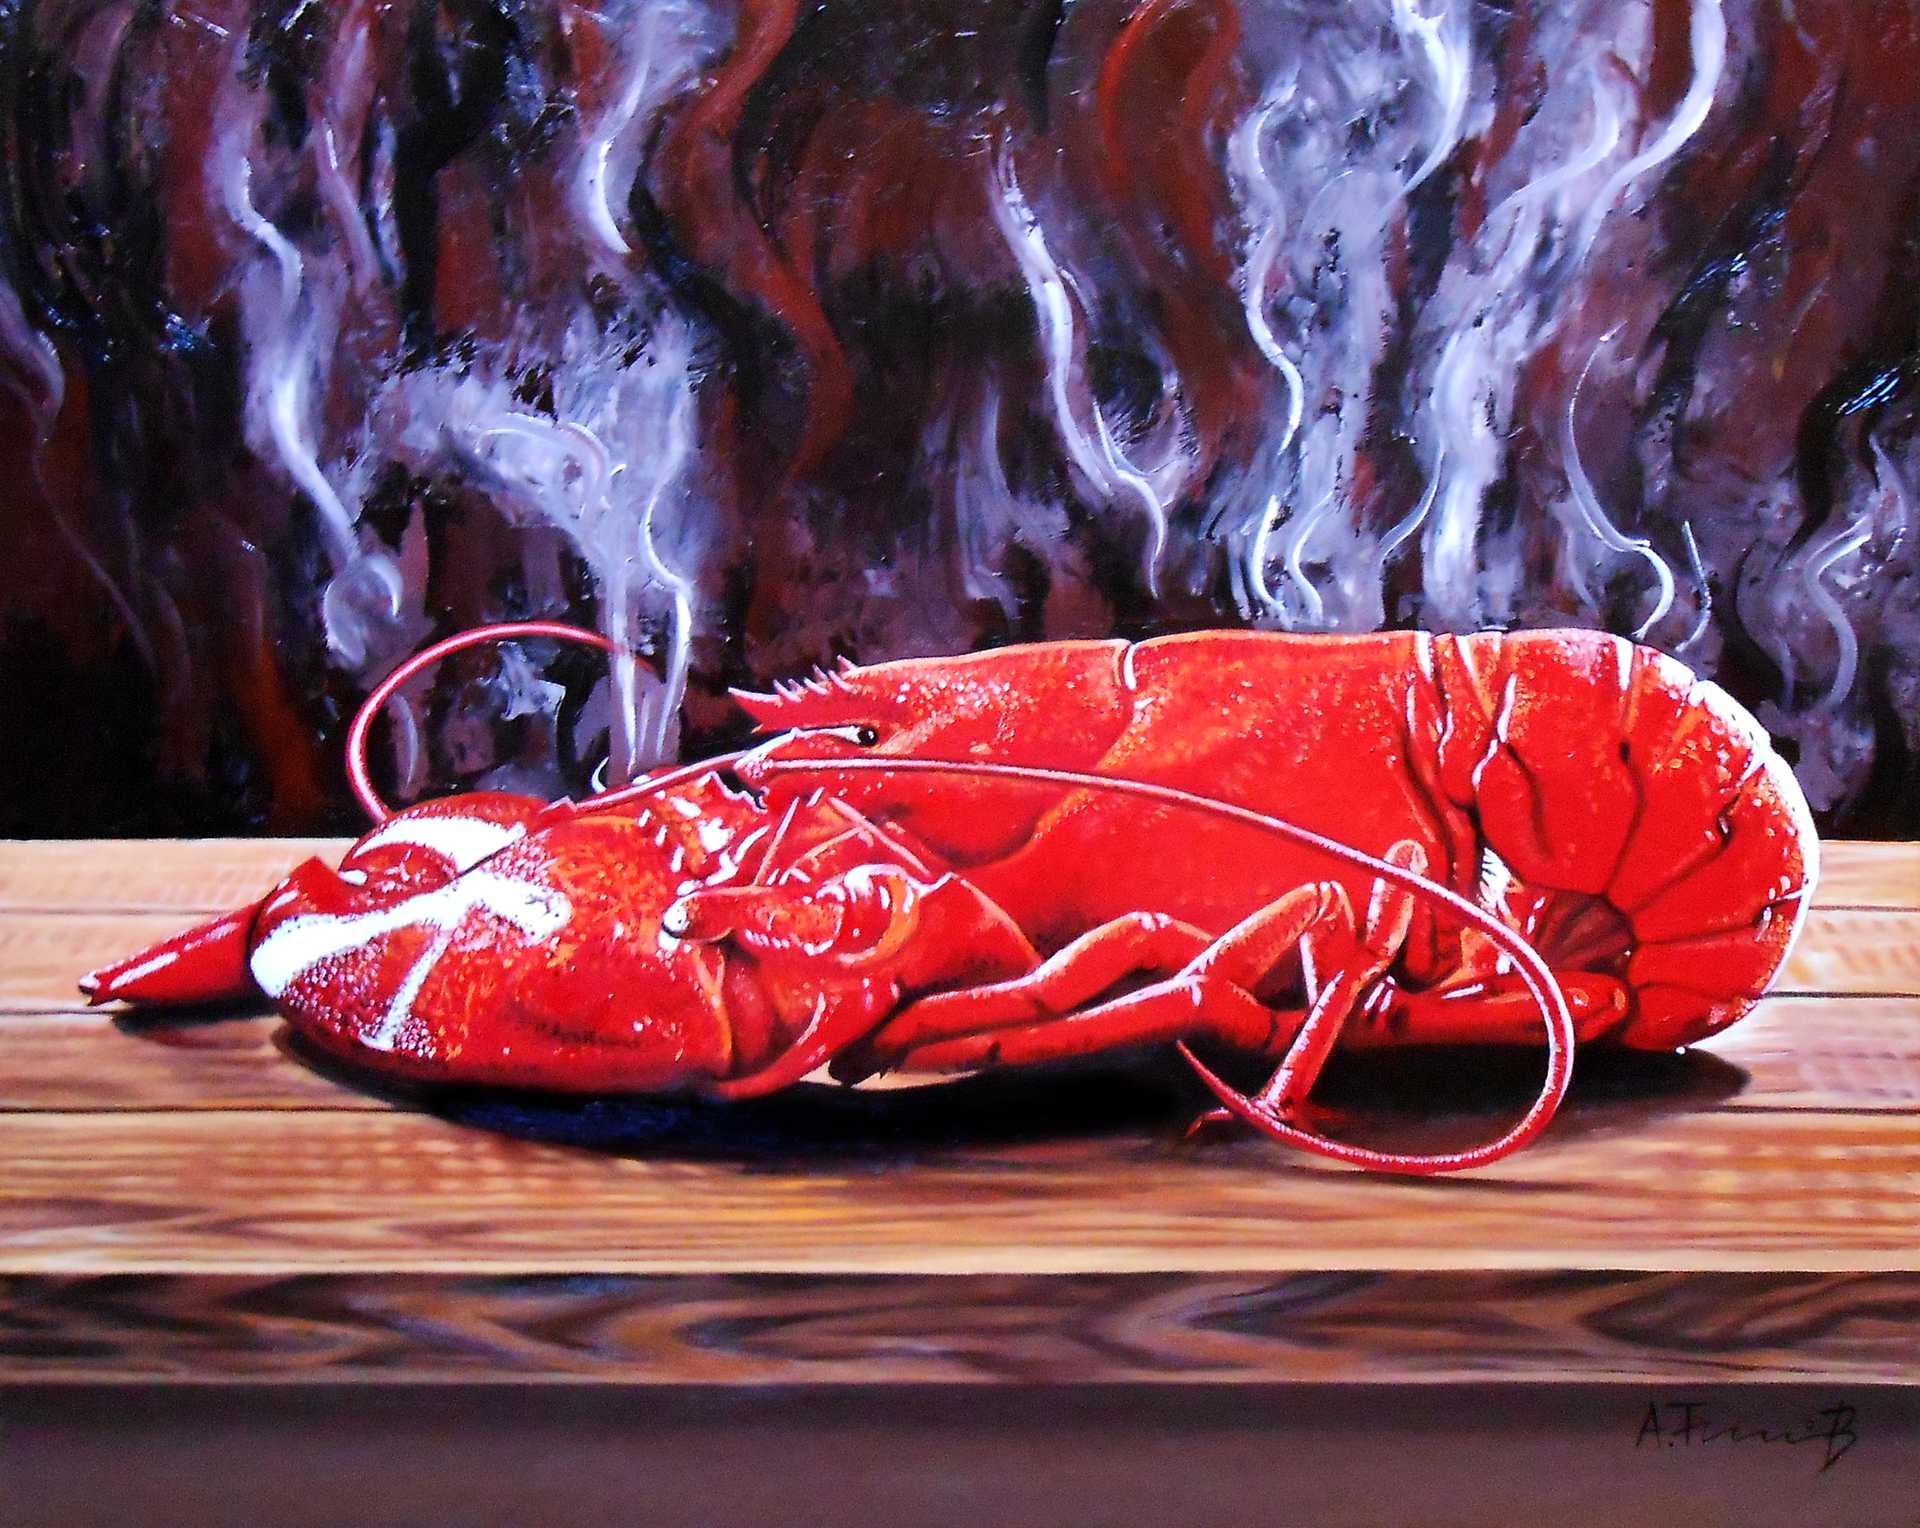 Still Life with Lobster